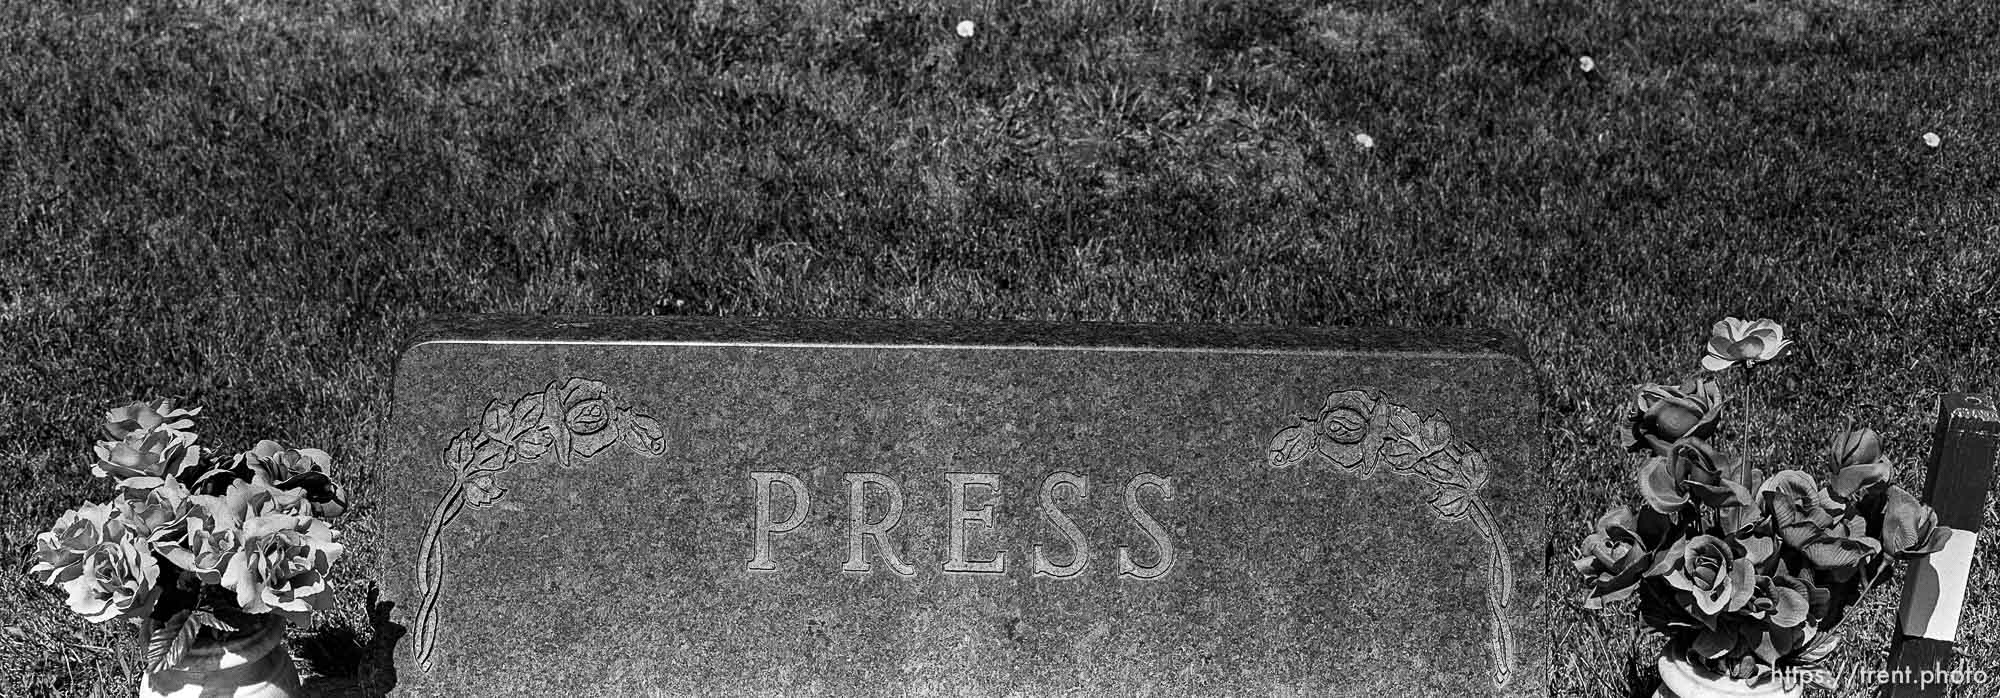 Press, RIP